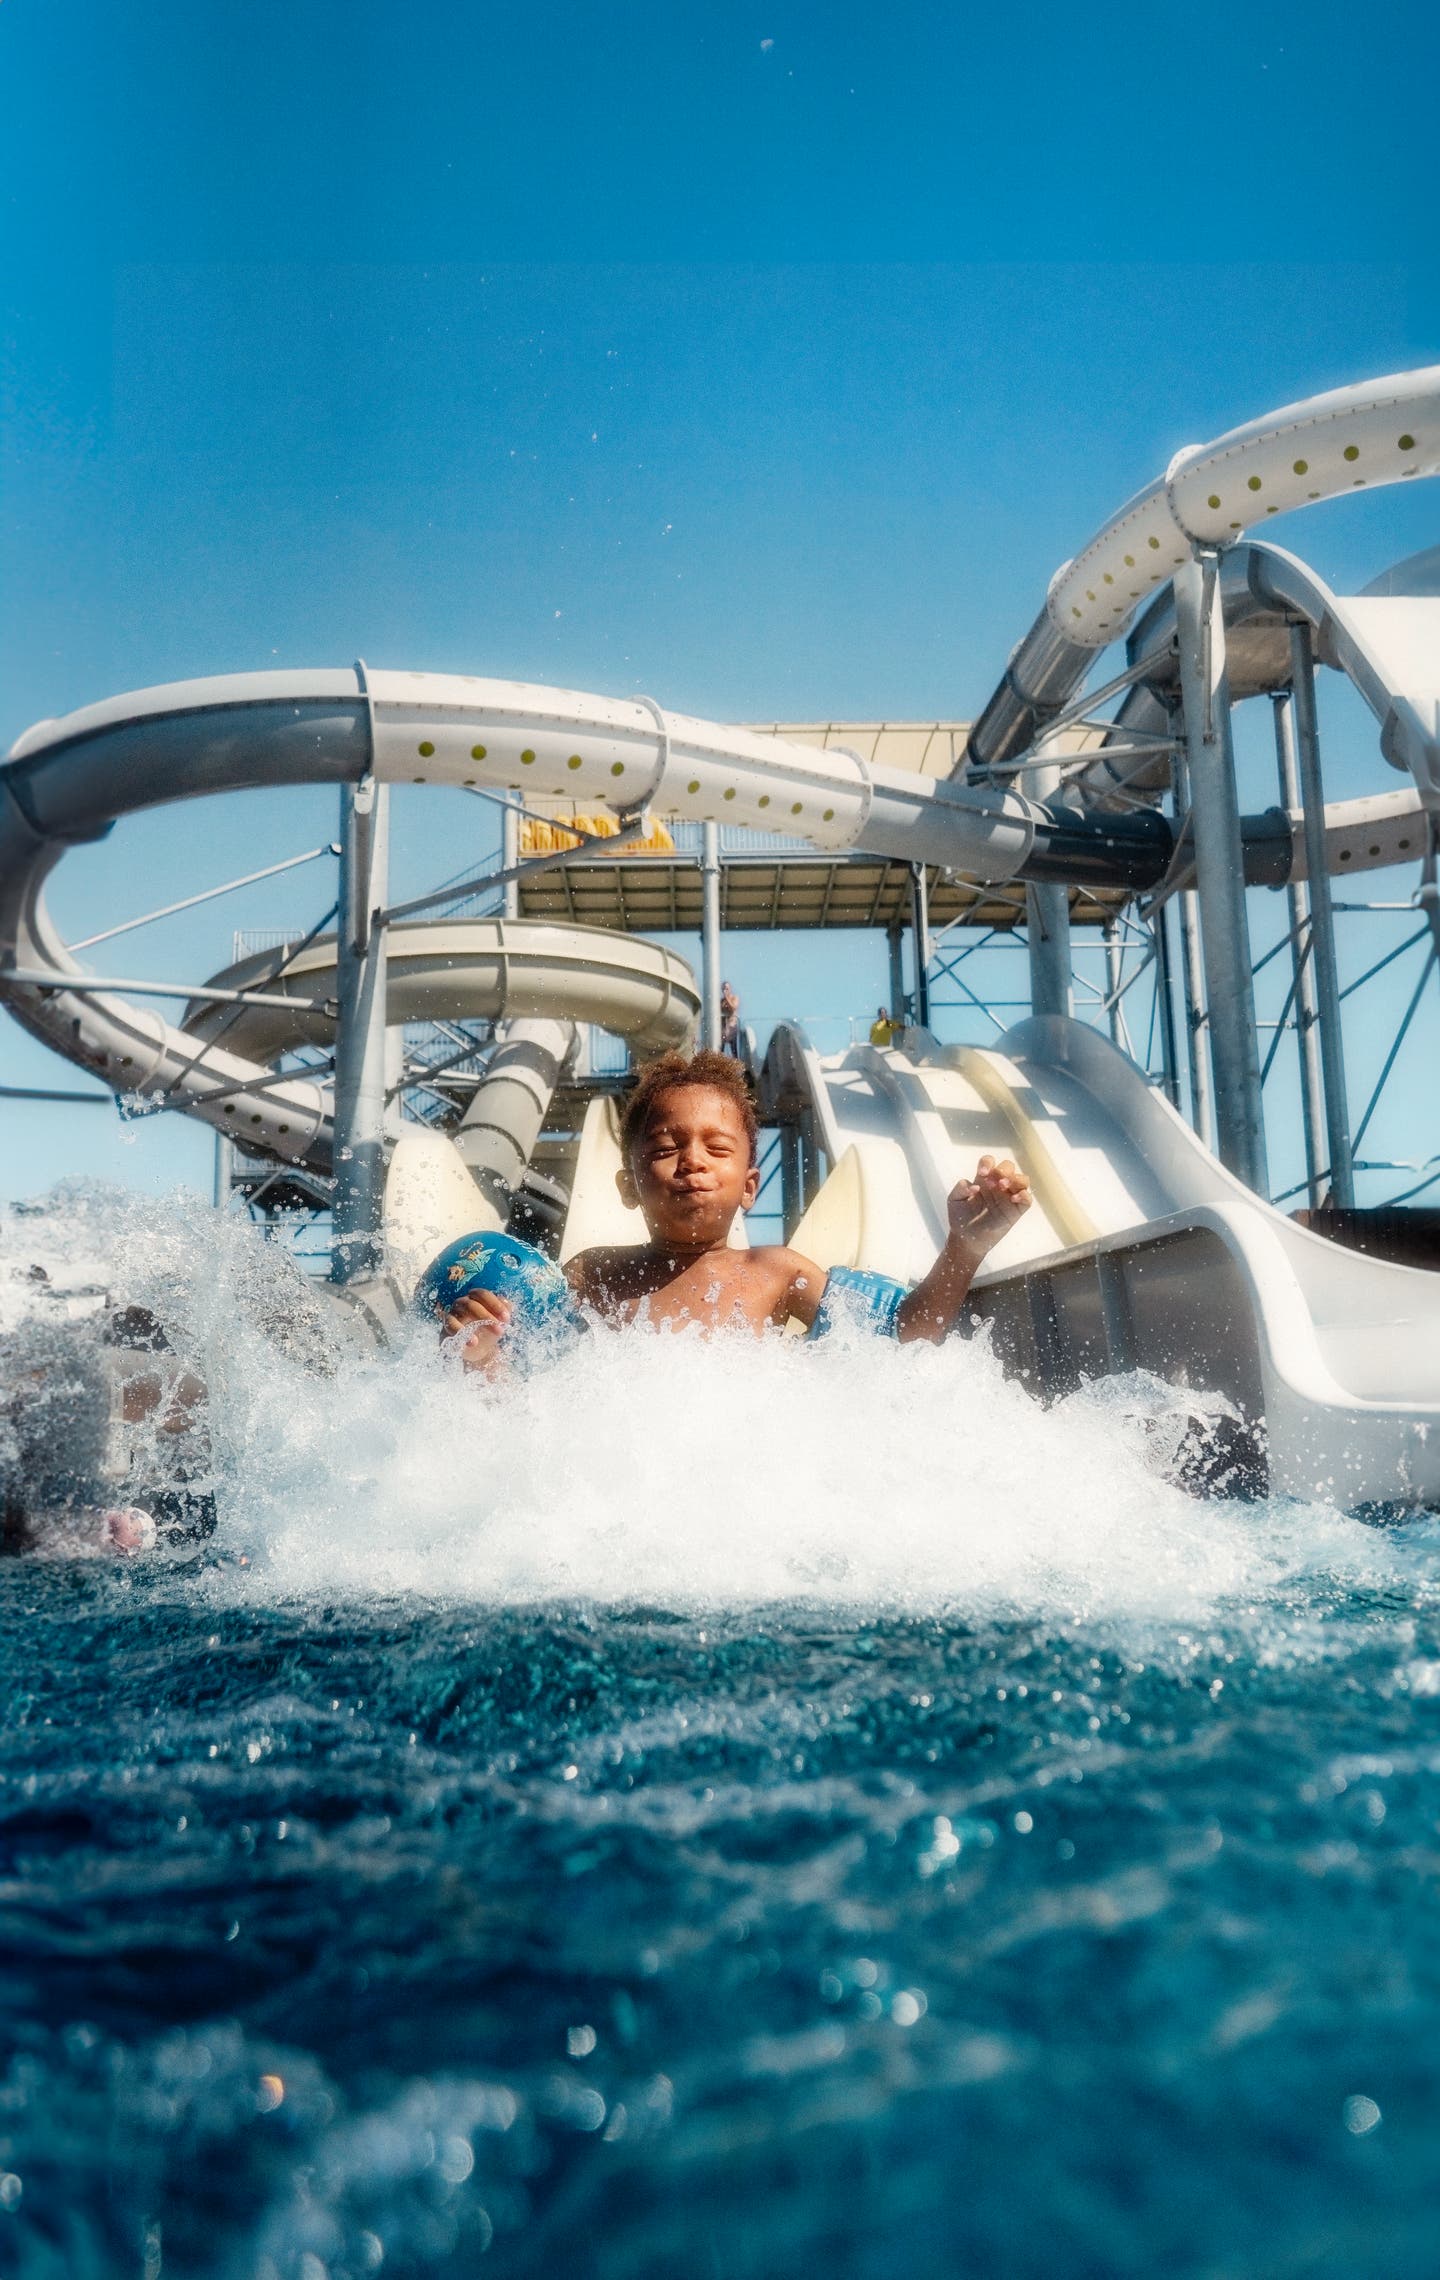 Ein Junge rutscht im Familienurlaub begeistert eine Wasserrutsche runter.